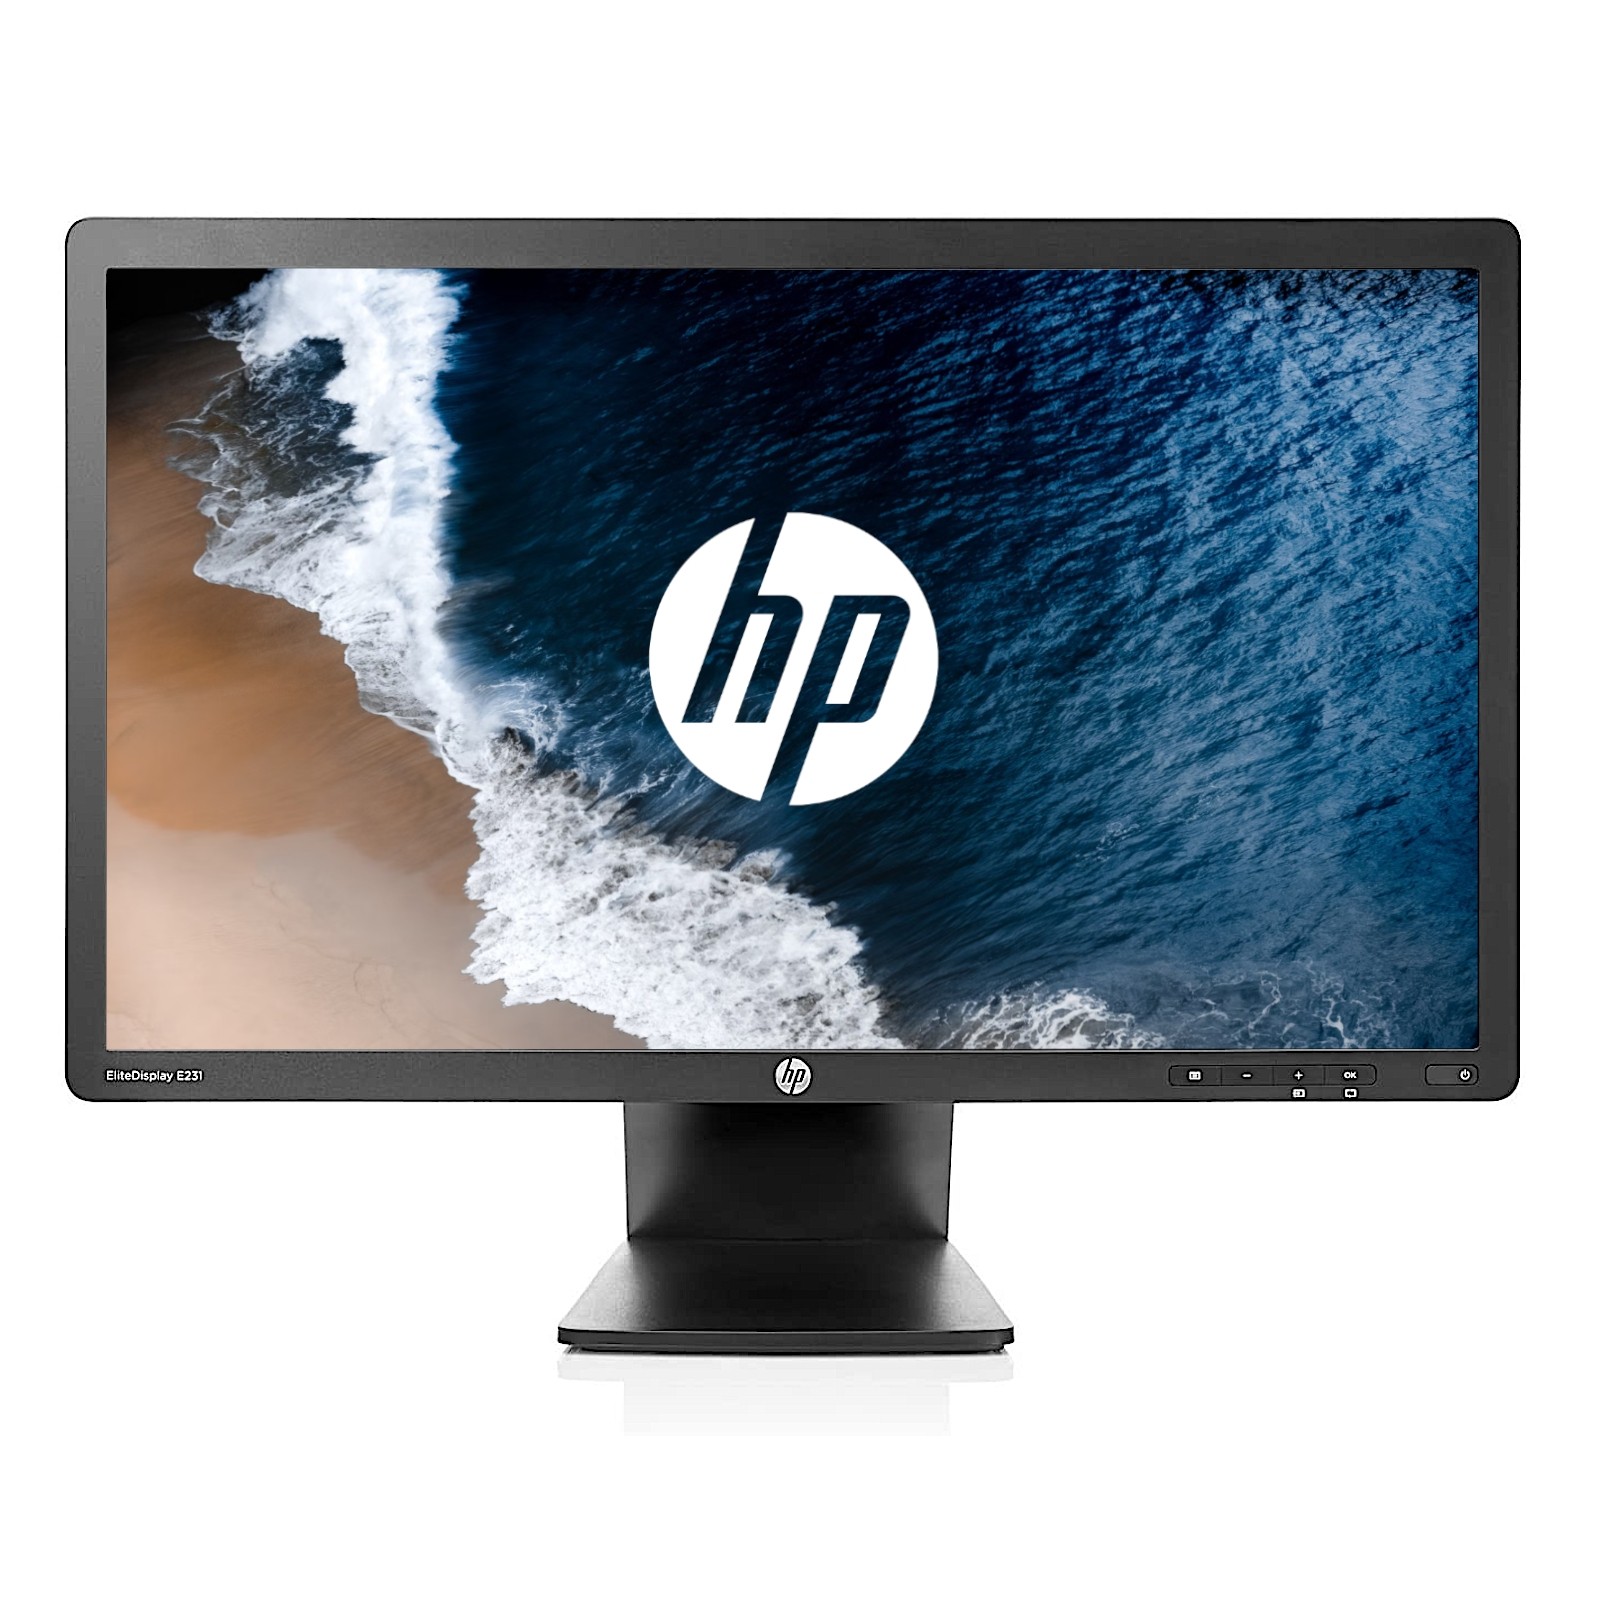 HP EliteDisplay E231 23" FHD (1920x1080) TN LED Monitor